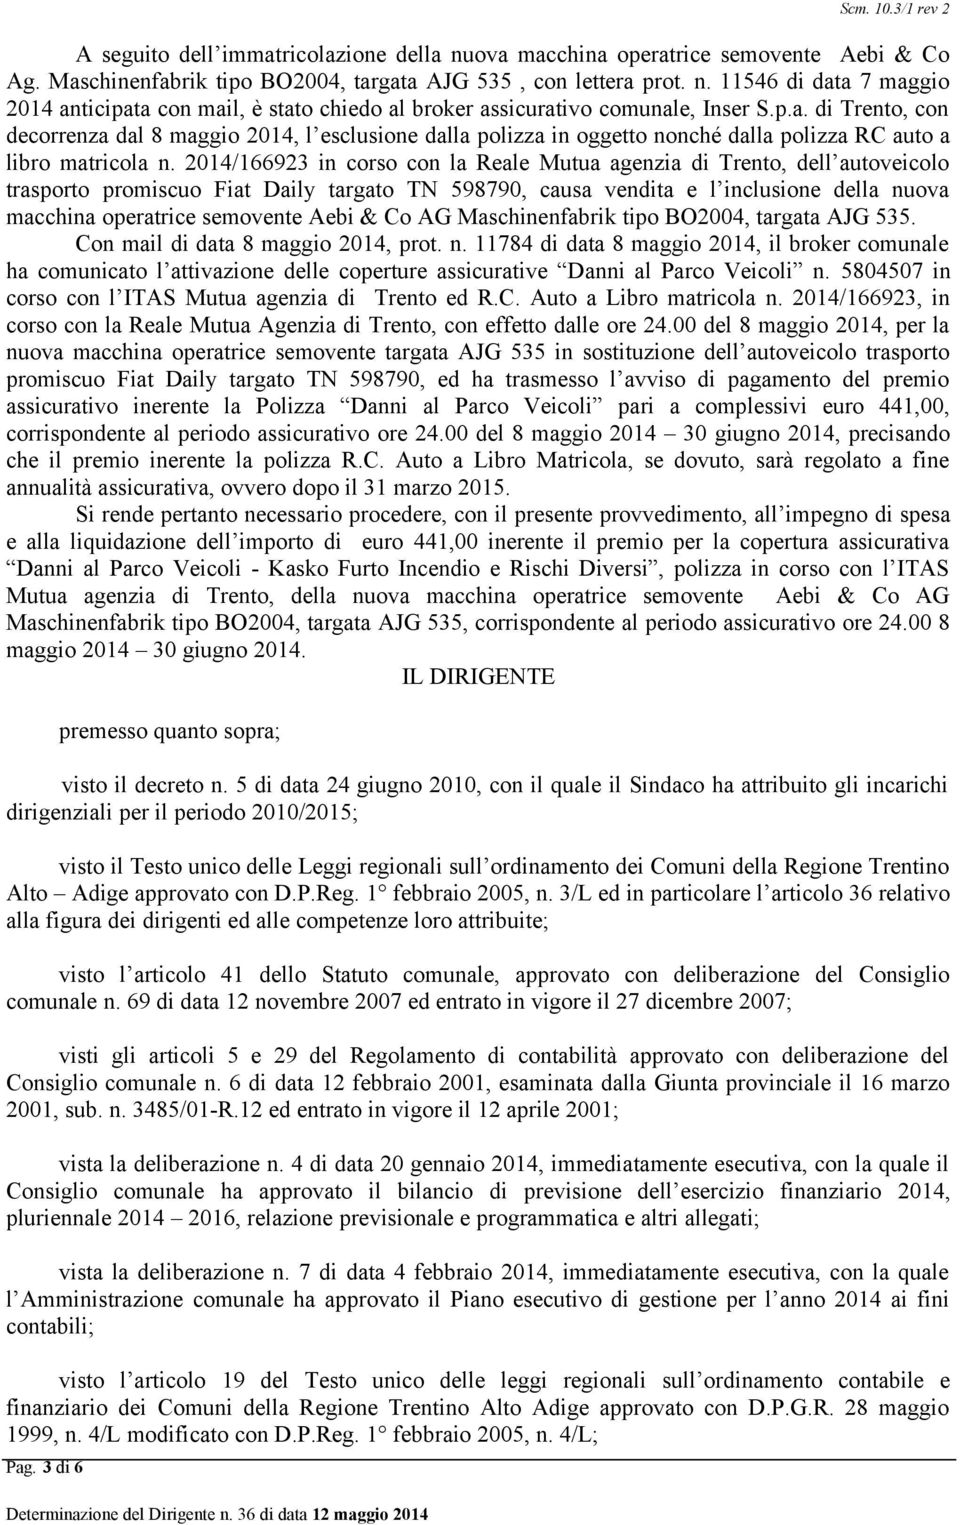 2014/166923 in corso con la Reale Mutua agenzia di Trento, dell autoveicolo trasporto promiscuo Fiat Daily targato TN 598790, causa vendita e l inclusione della nuova macchina operatrice semovente